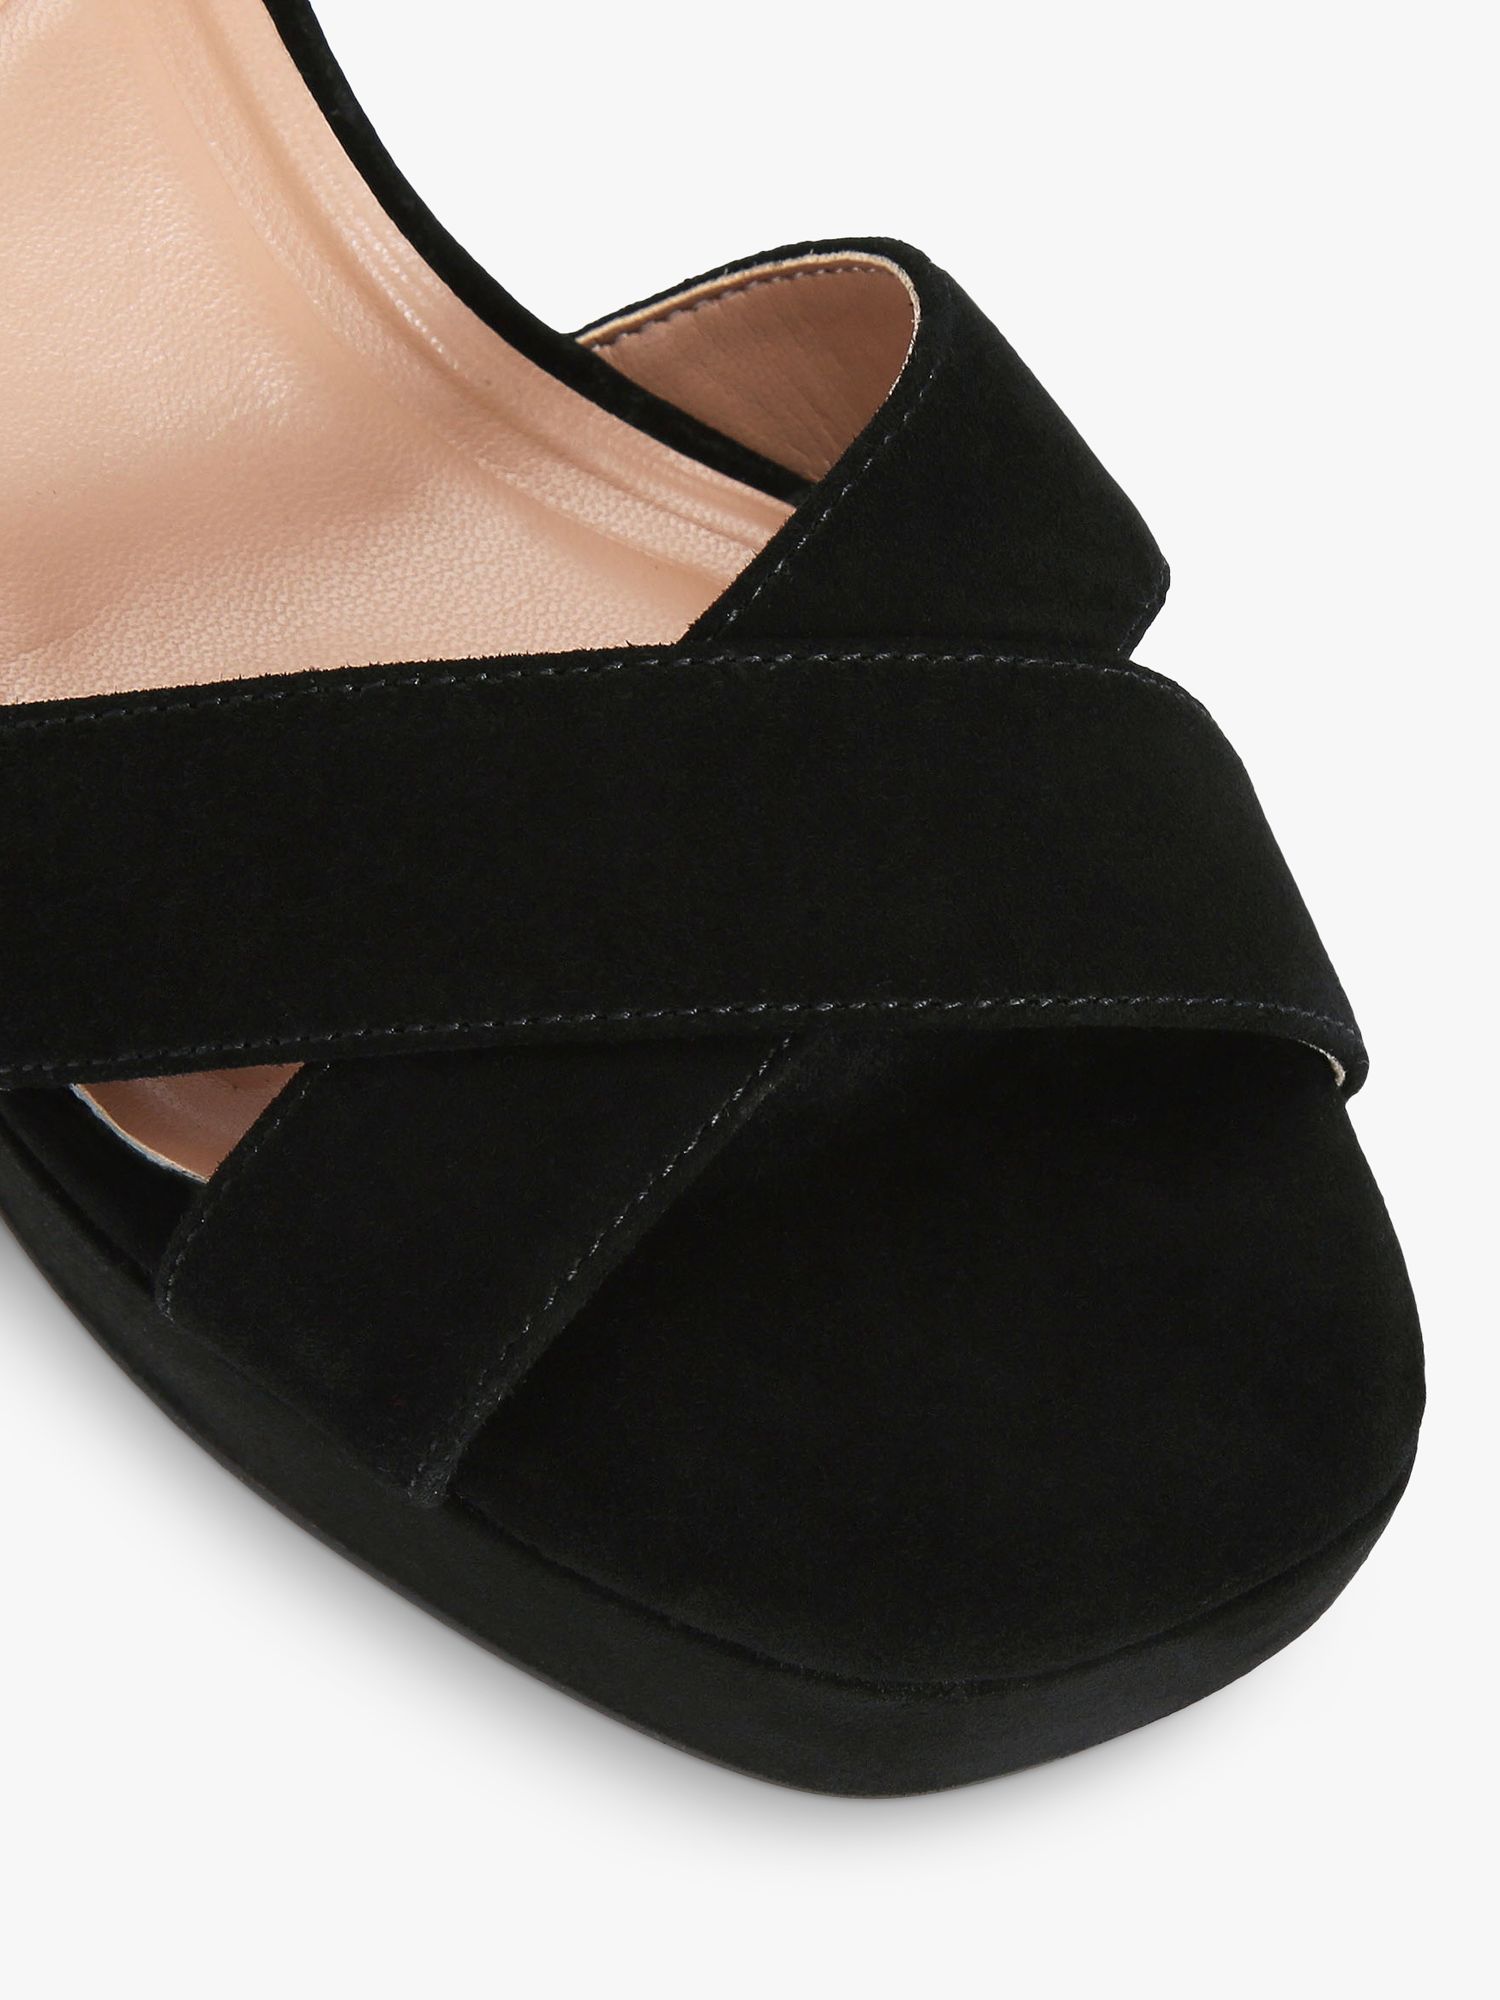 Carvela Serafina Platform Heel Sandals, Black at John Lewis & Partners